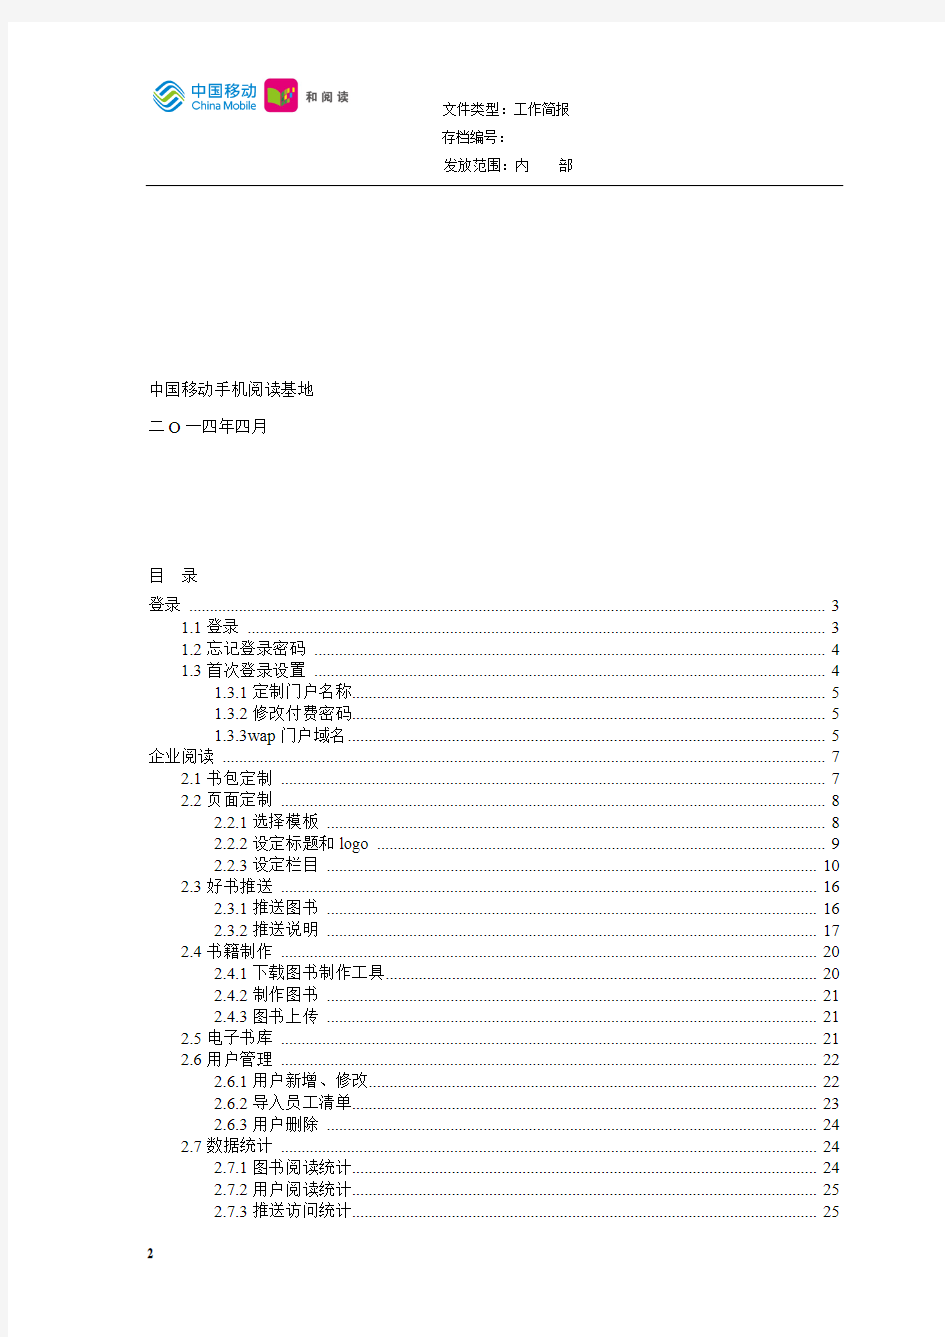 中国移动通信企业阅读、企业手机报、手机报统付版行业产品管理员使用手册V1.0